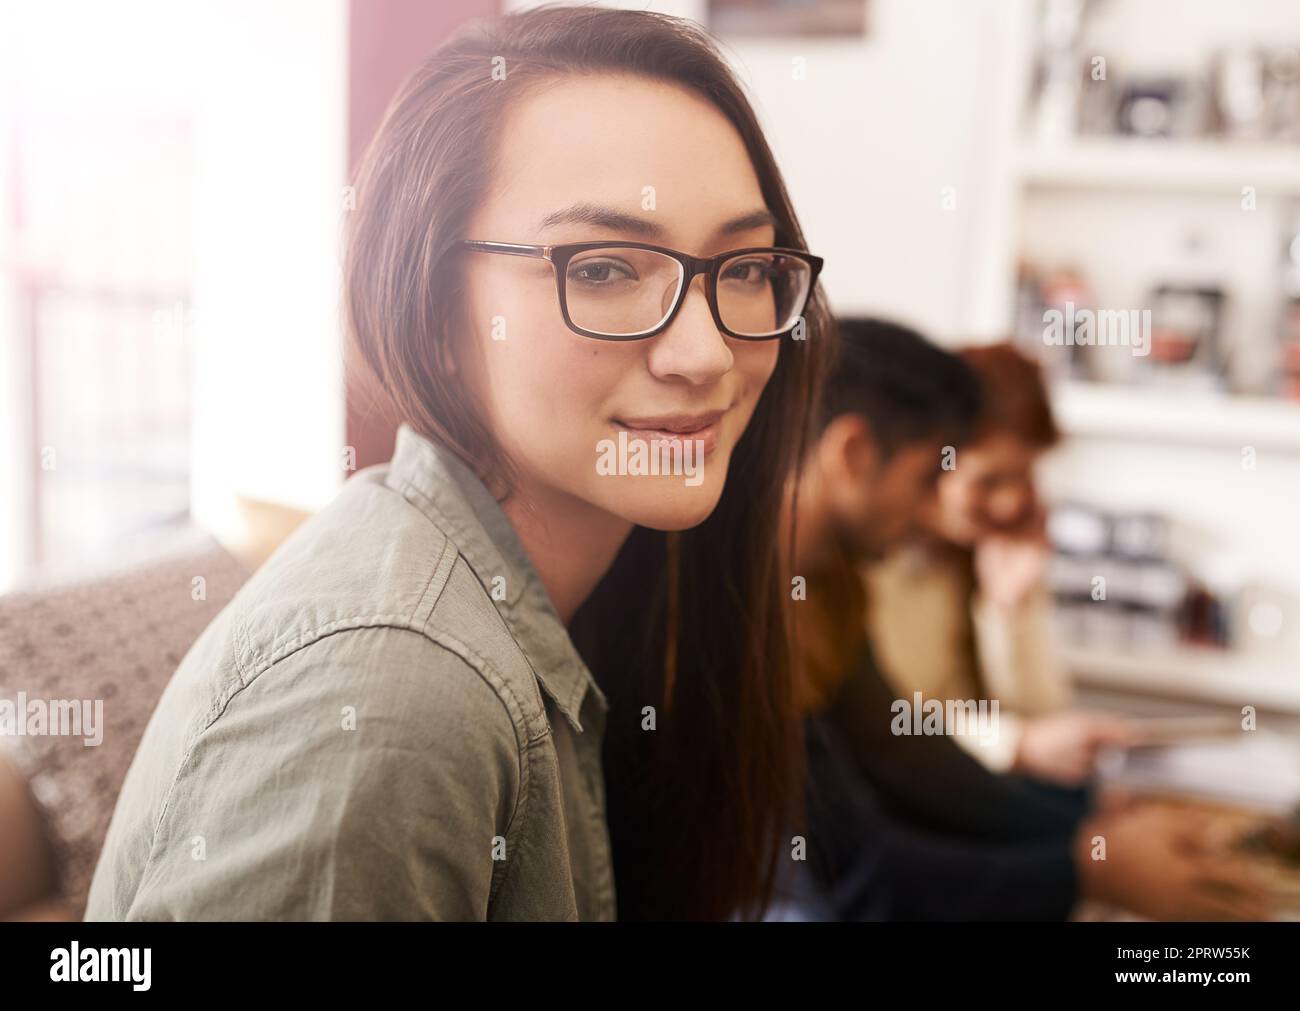 Wir alle brauchen eine Auszeit. Porträt einer jungen Frau in einem Café mit ihren Freunden, die im Hintergrund sitzen. Stockfoto